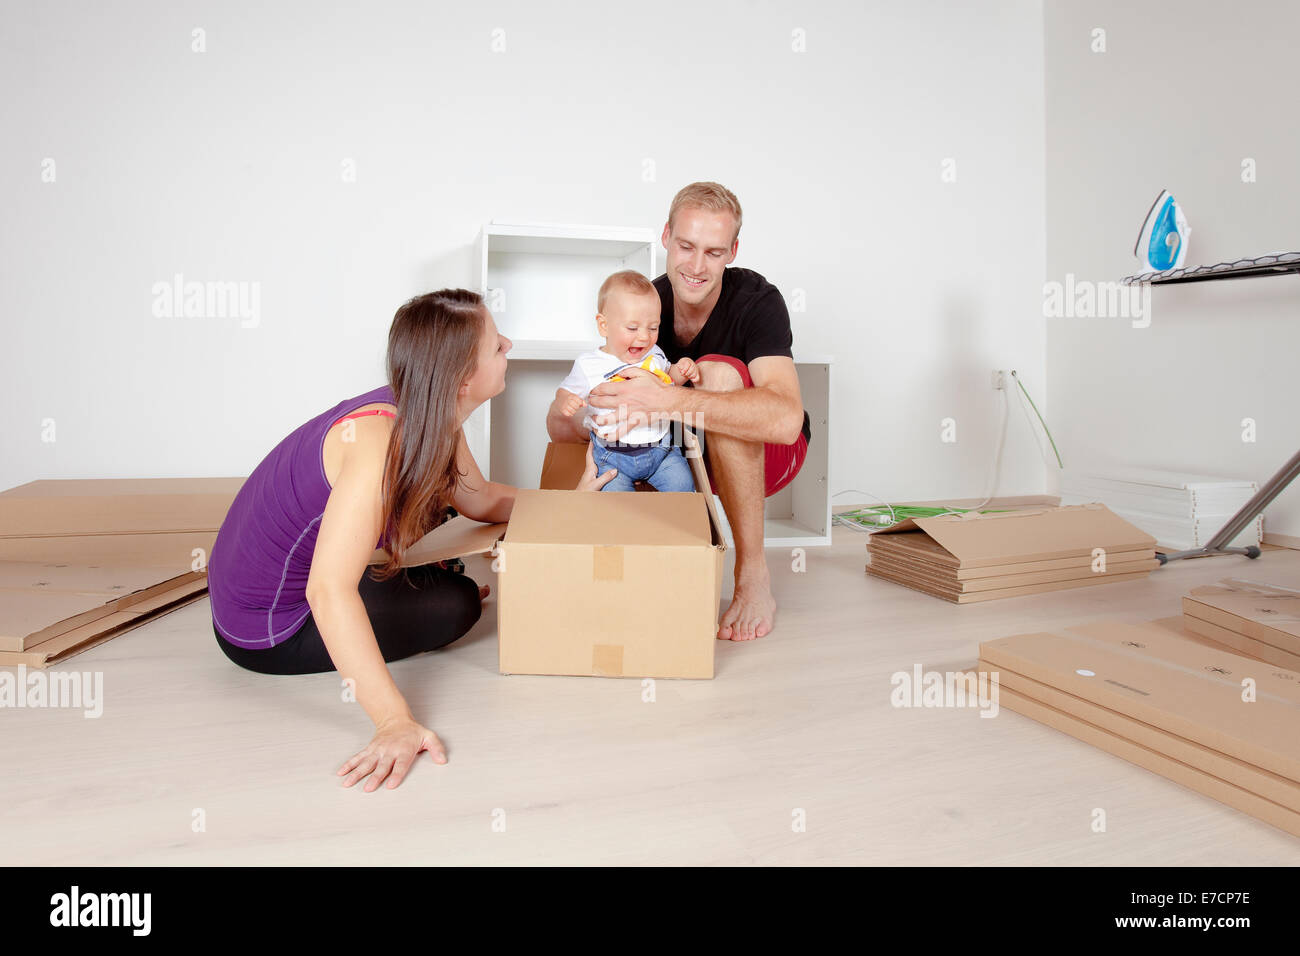 Jeune famille avec un bébé déménagement dans un nouvel appartement Banque D'Images